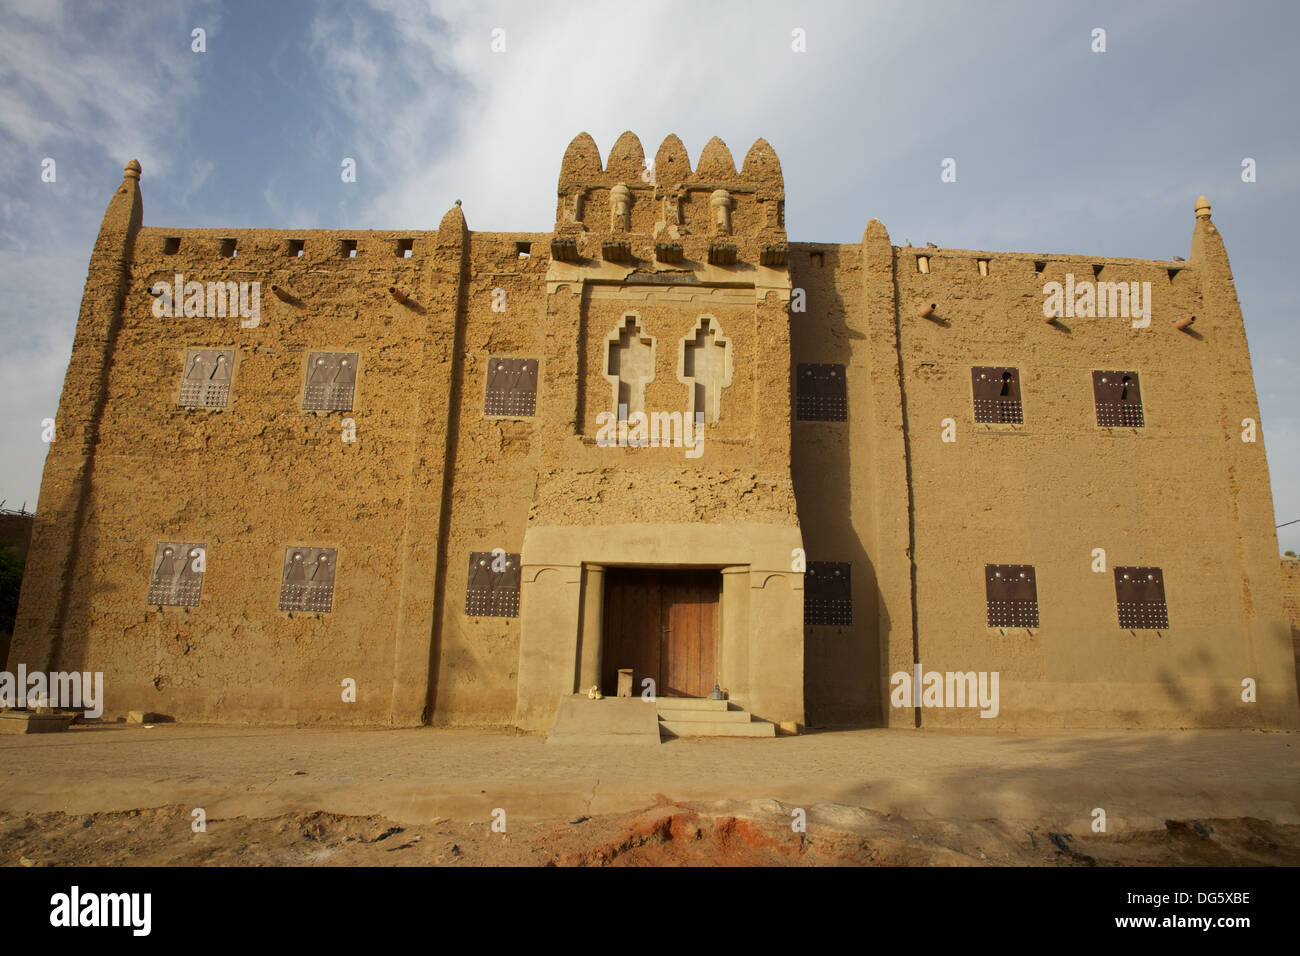 Edificio pubblico - tradizionale edificio di fango in Mali. Foto Stock